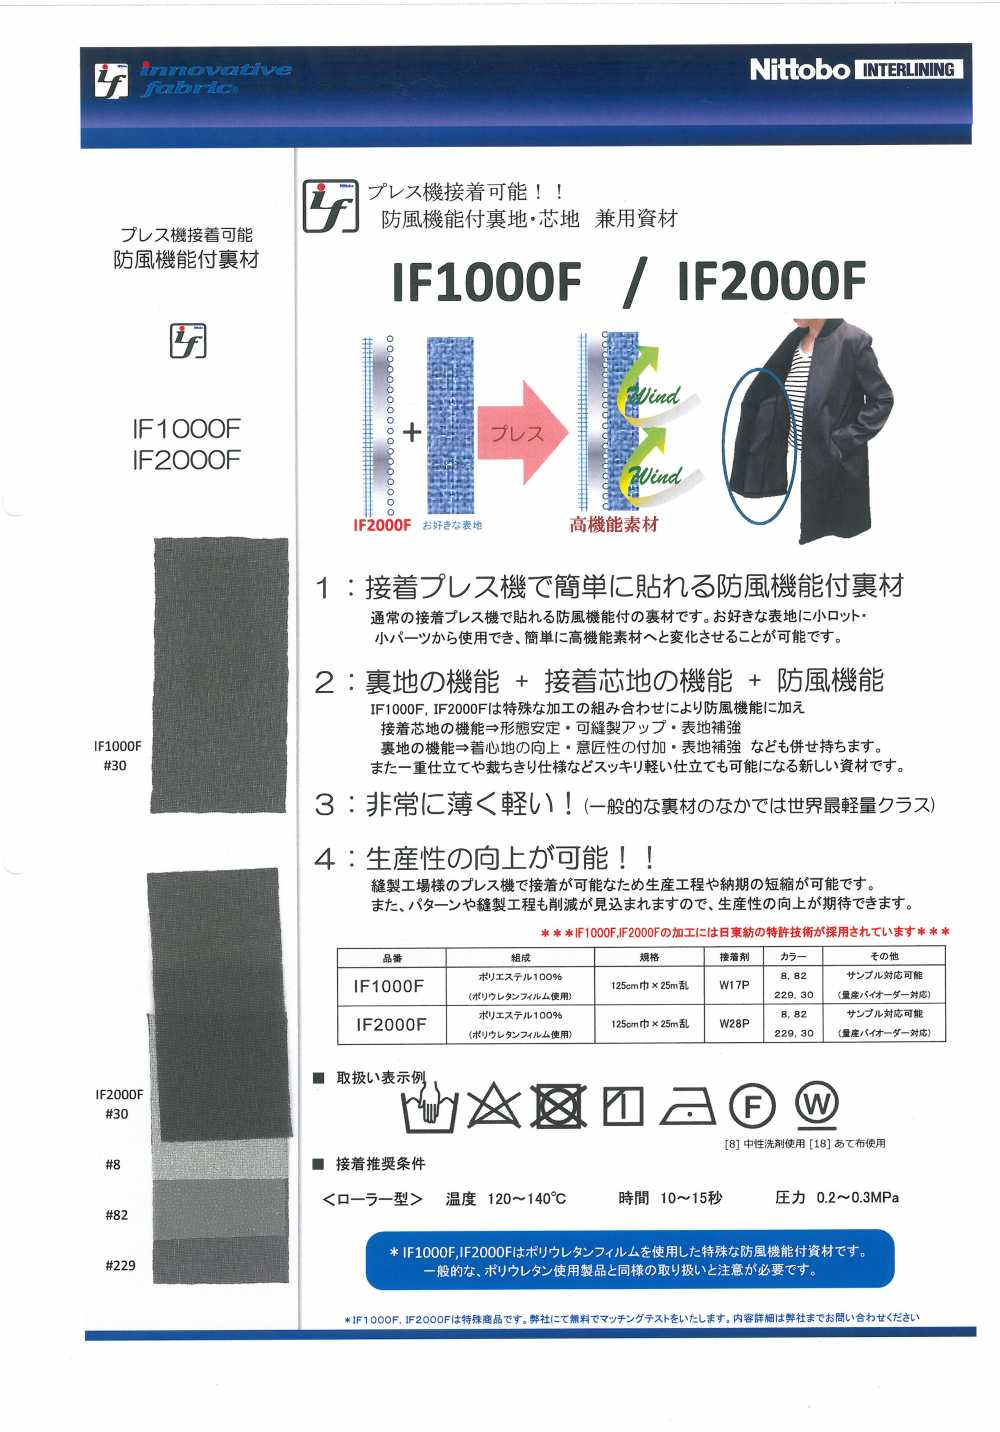 IF1000F 방풍 기능 첨부 안감·심지 겸용 자재 닛토보 (닛토보인터라이닝)